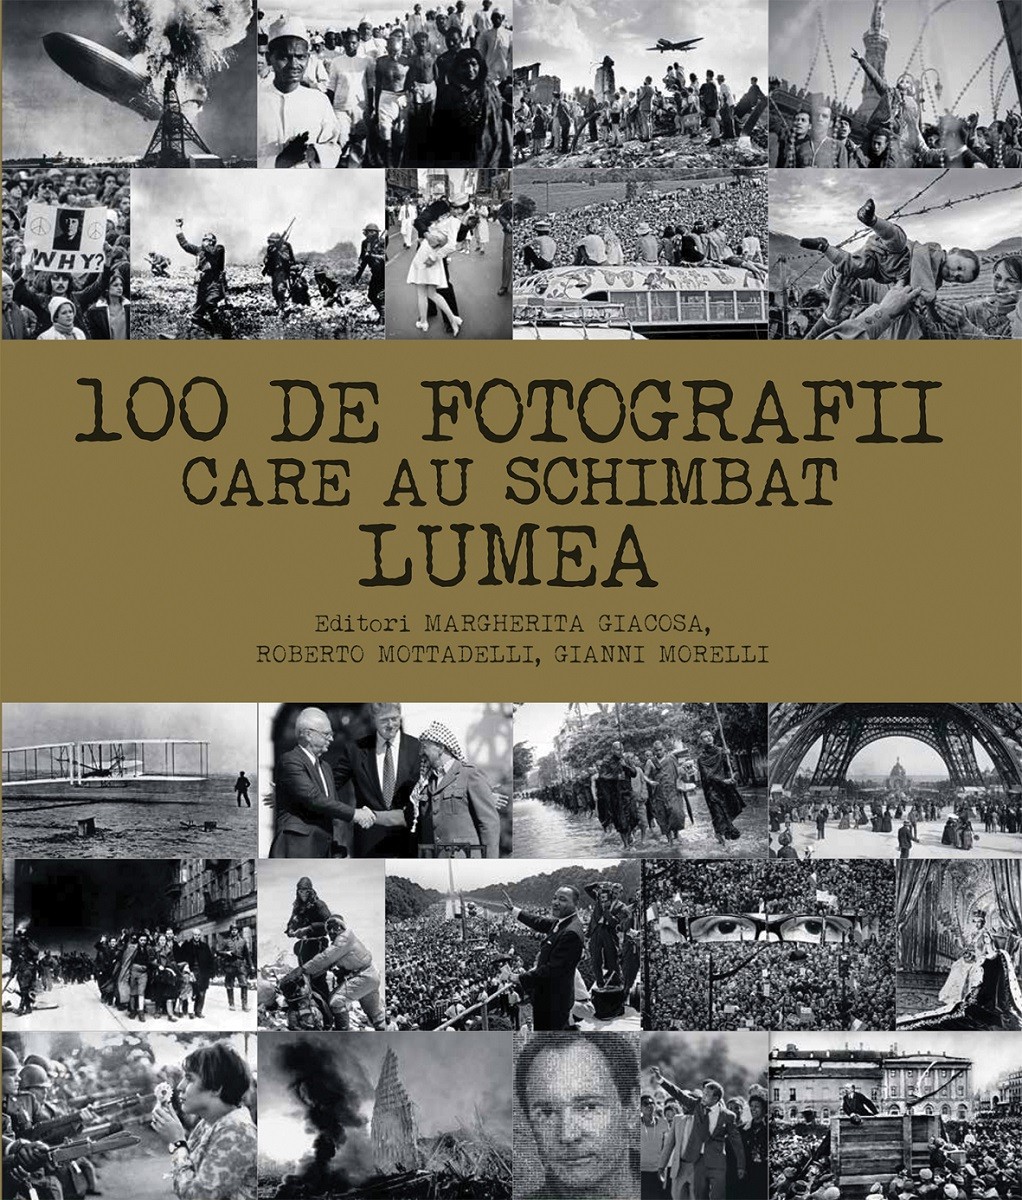 100 de fotografii care au schimbat lumea | Margherita Giacosa, Roberto Mottadelli, Gianni Morelli carturesti.ro imagine 2022 cartile.ro